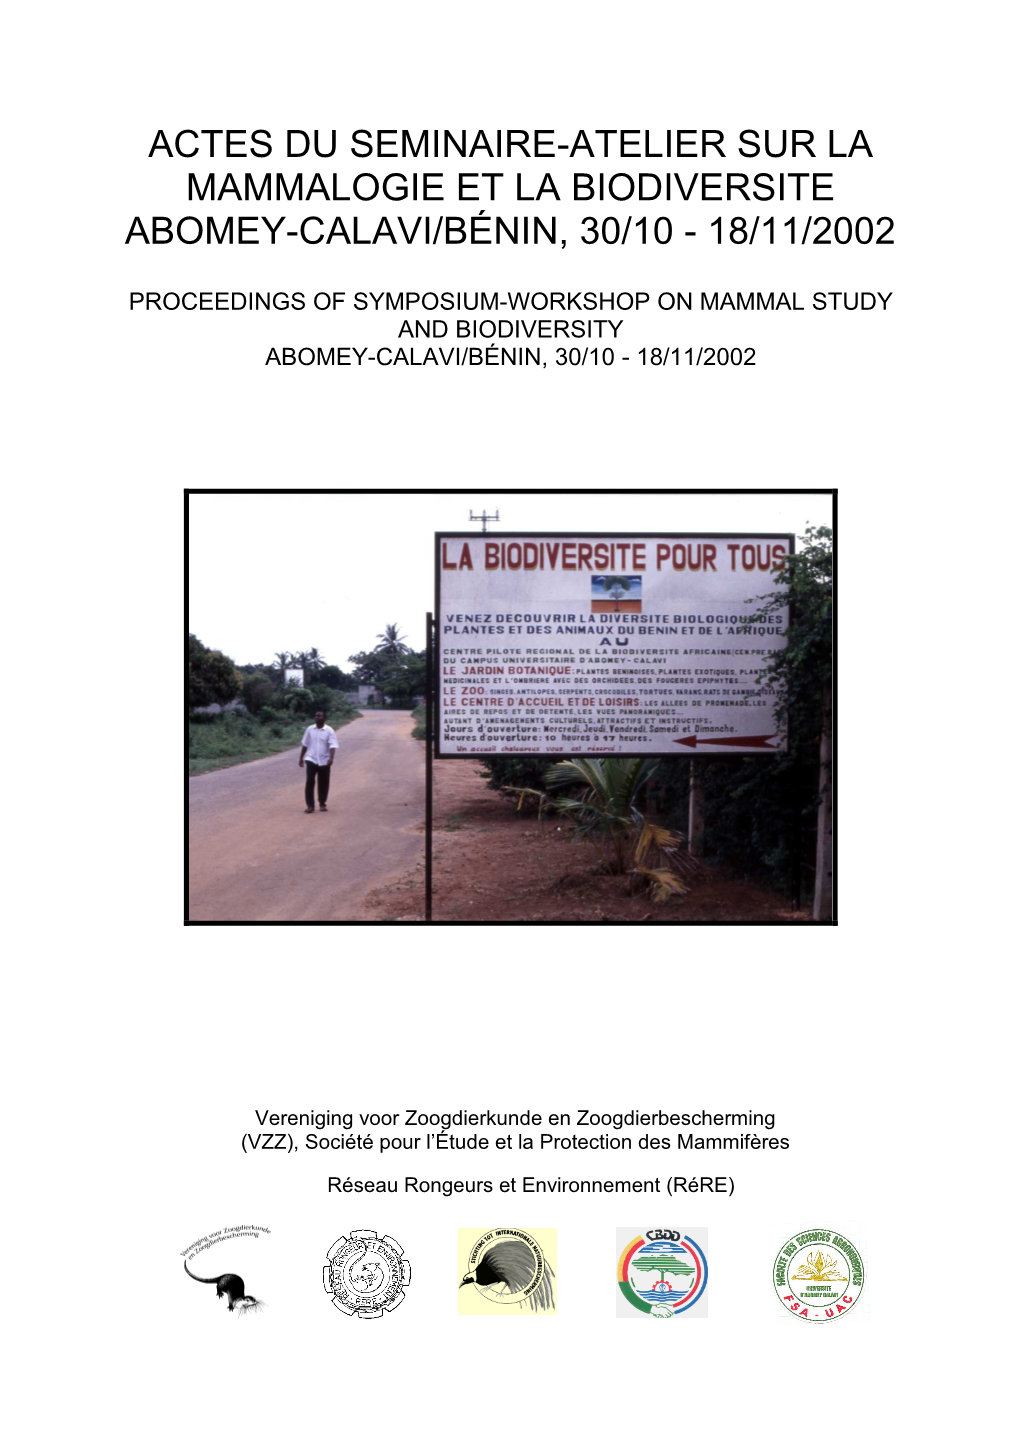 Actes Séminaire Mammalogie & Biodiversité Rére & Vzz Benin 2002